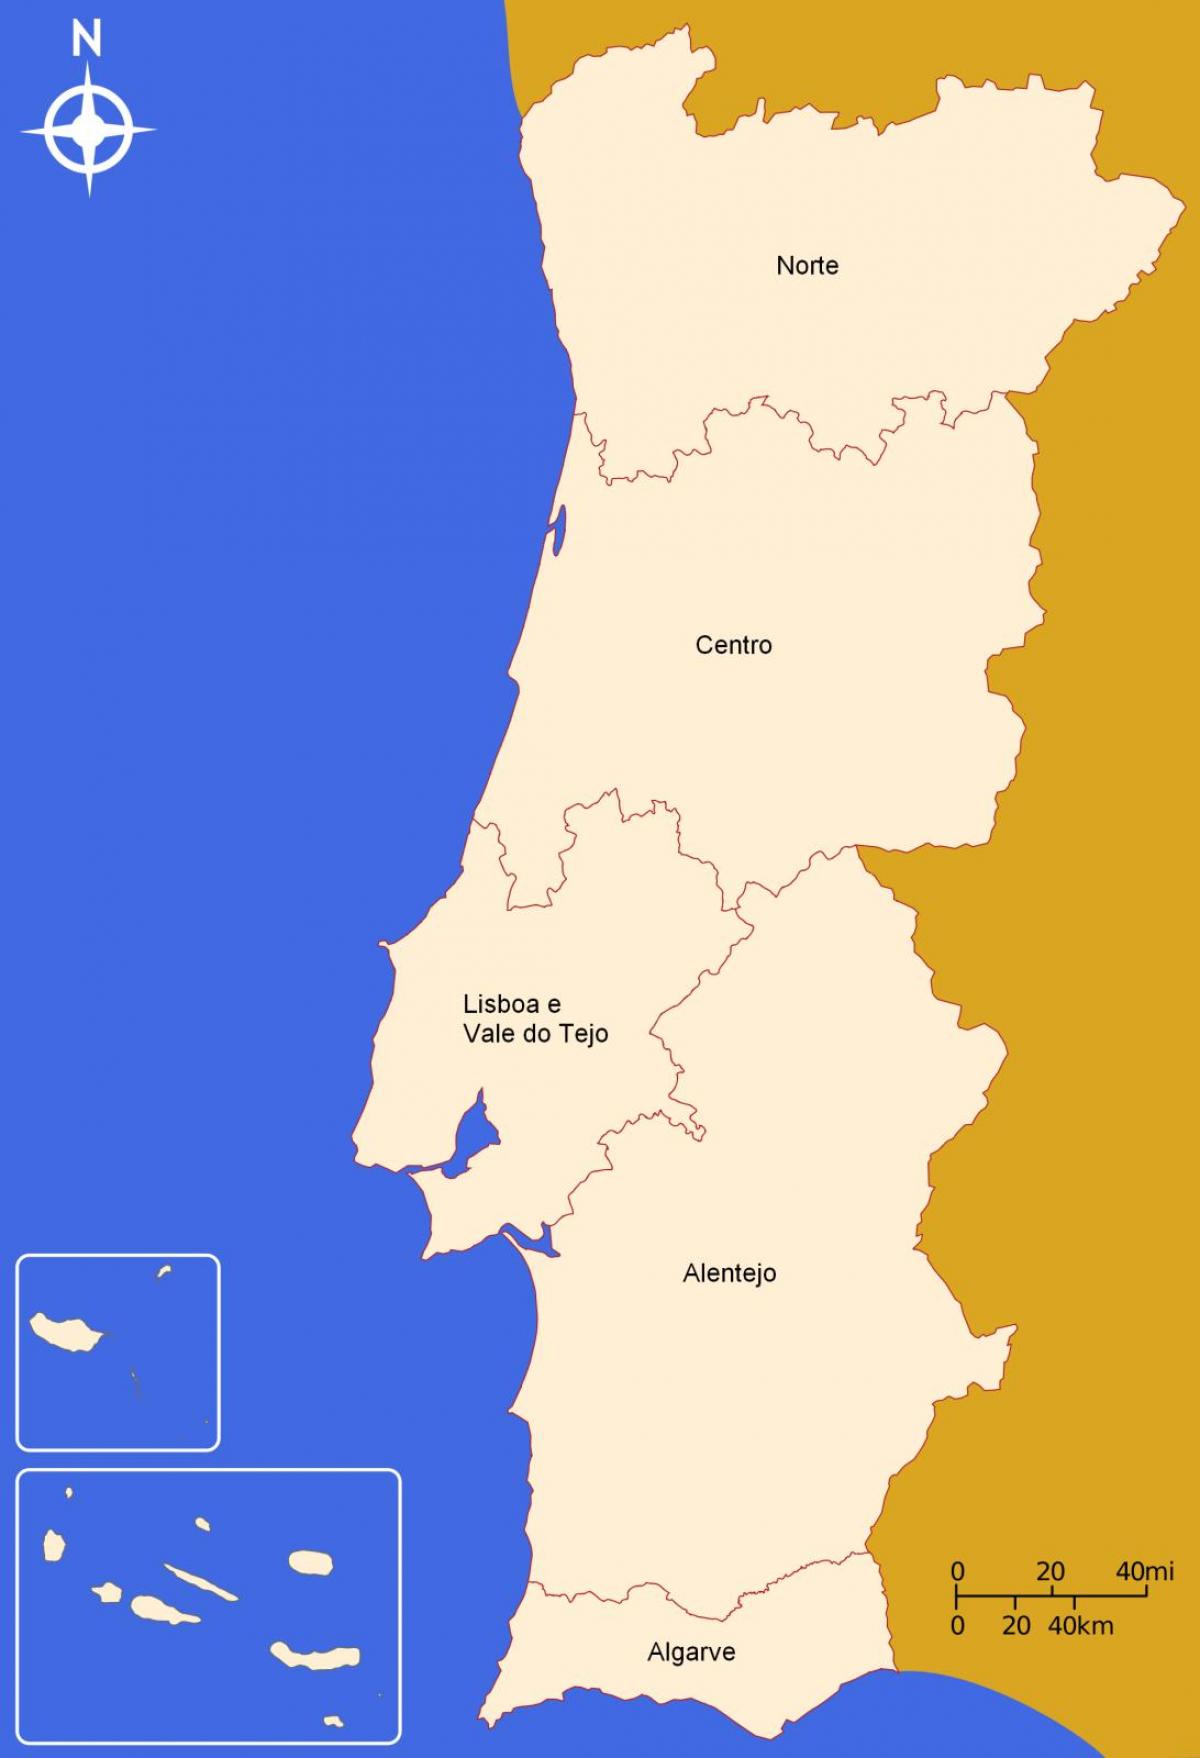 O Mapa Detalhado De Portugal Com Regiões Ou Estados Royalty Free